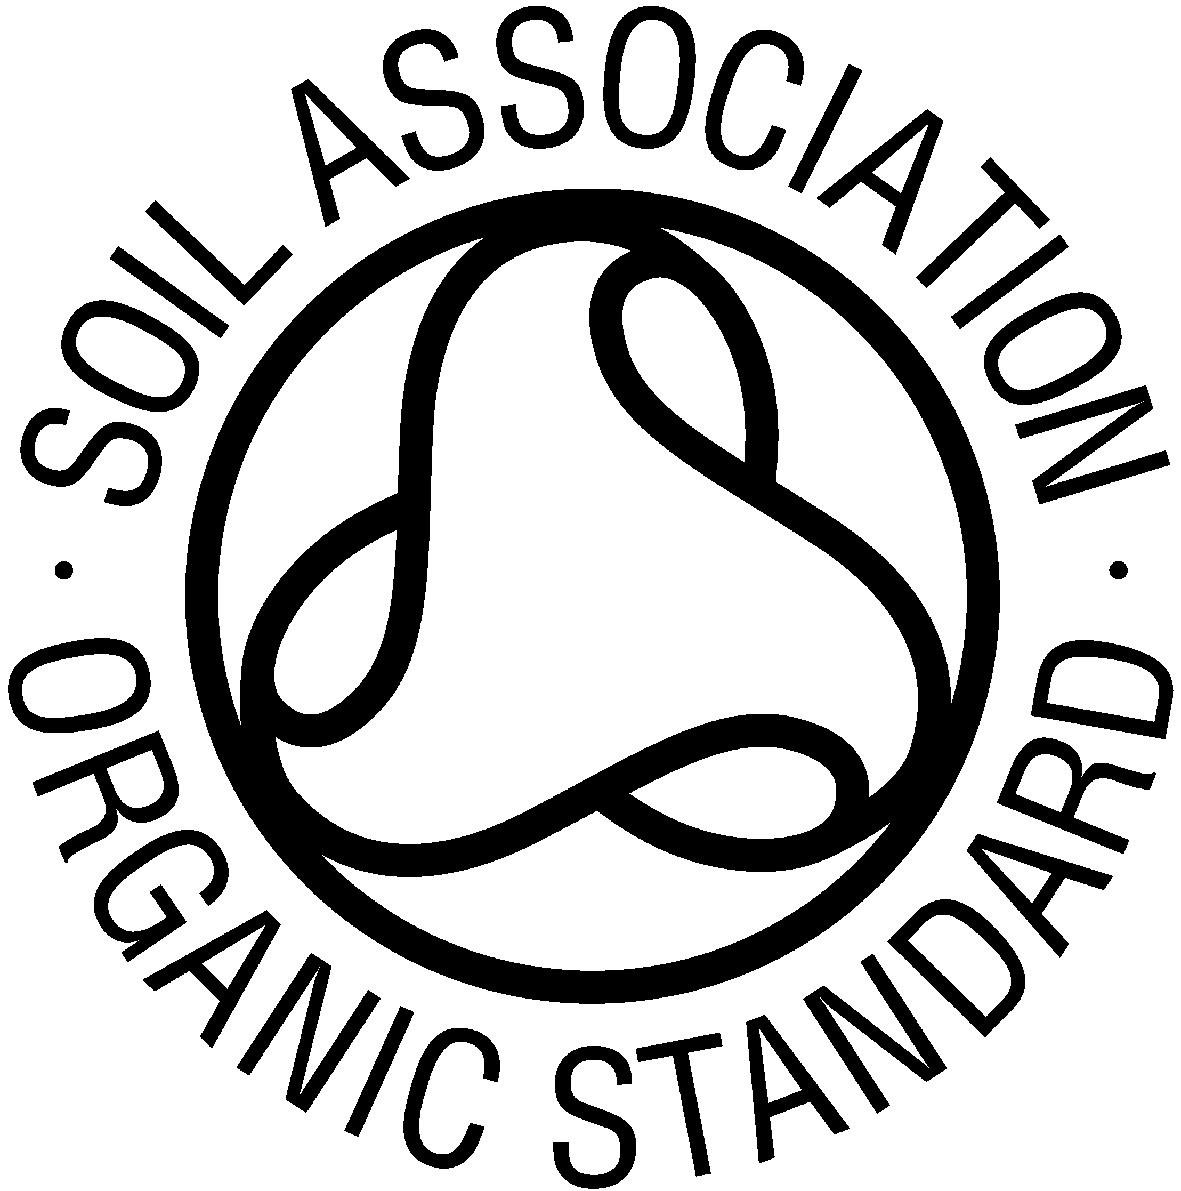 Soil_Association_Logo.jpg